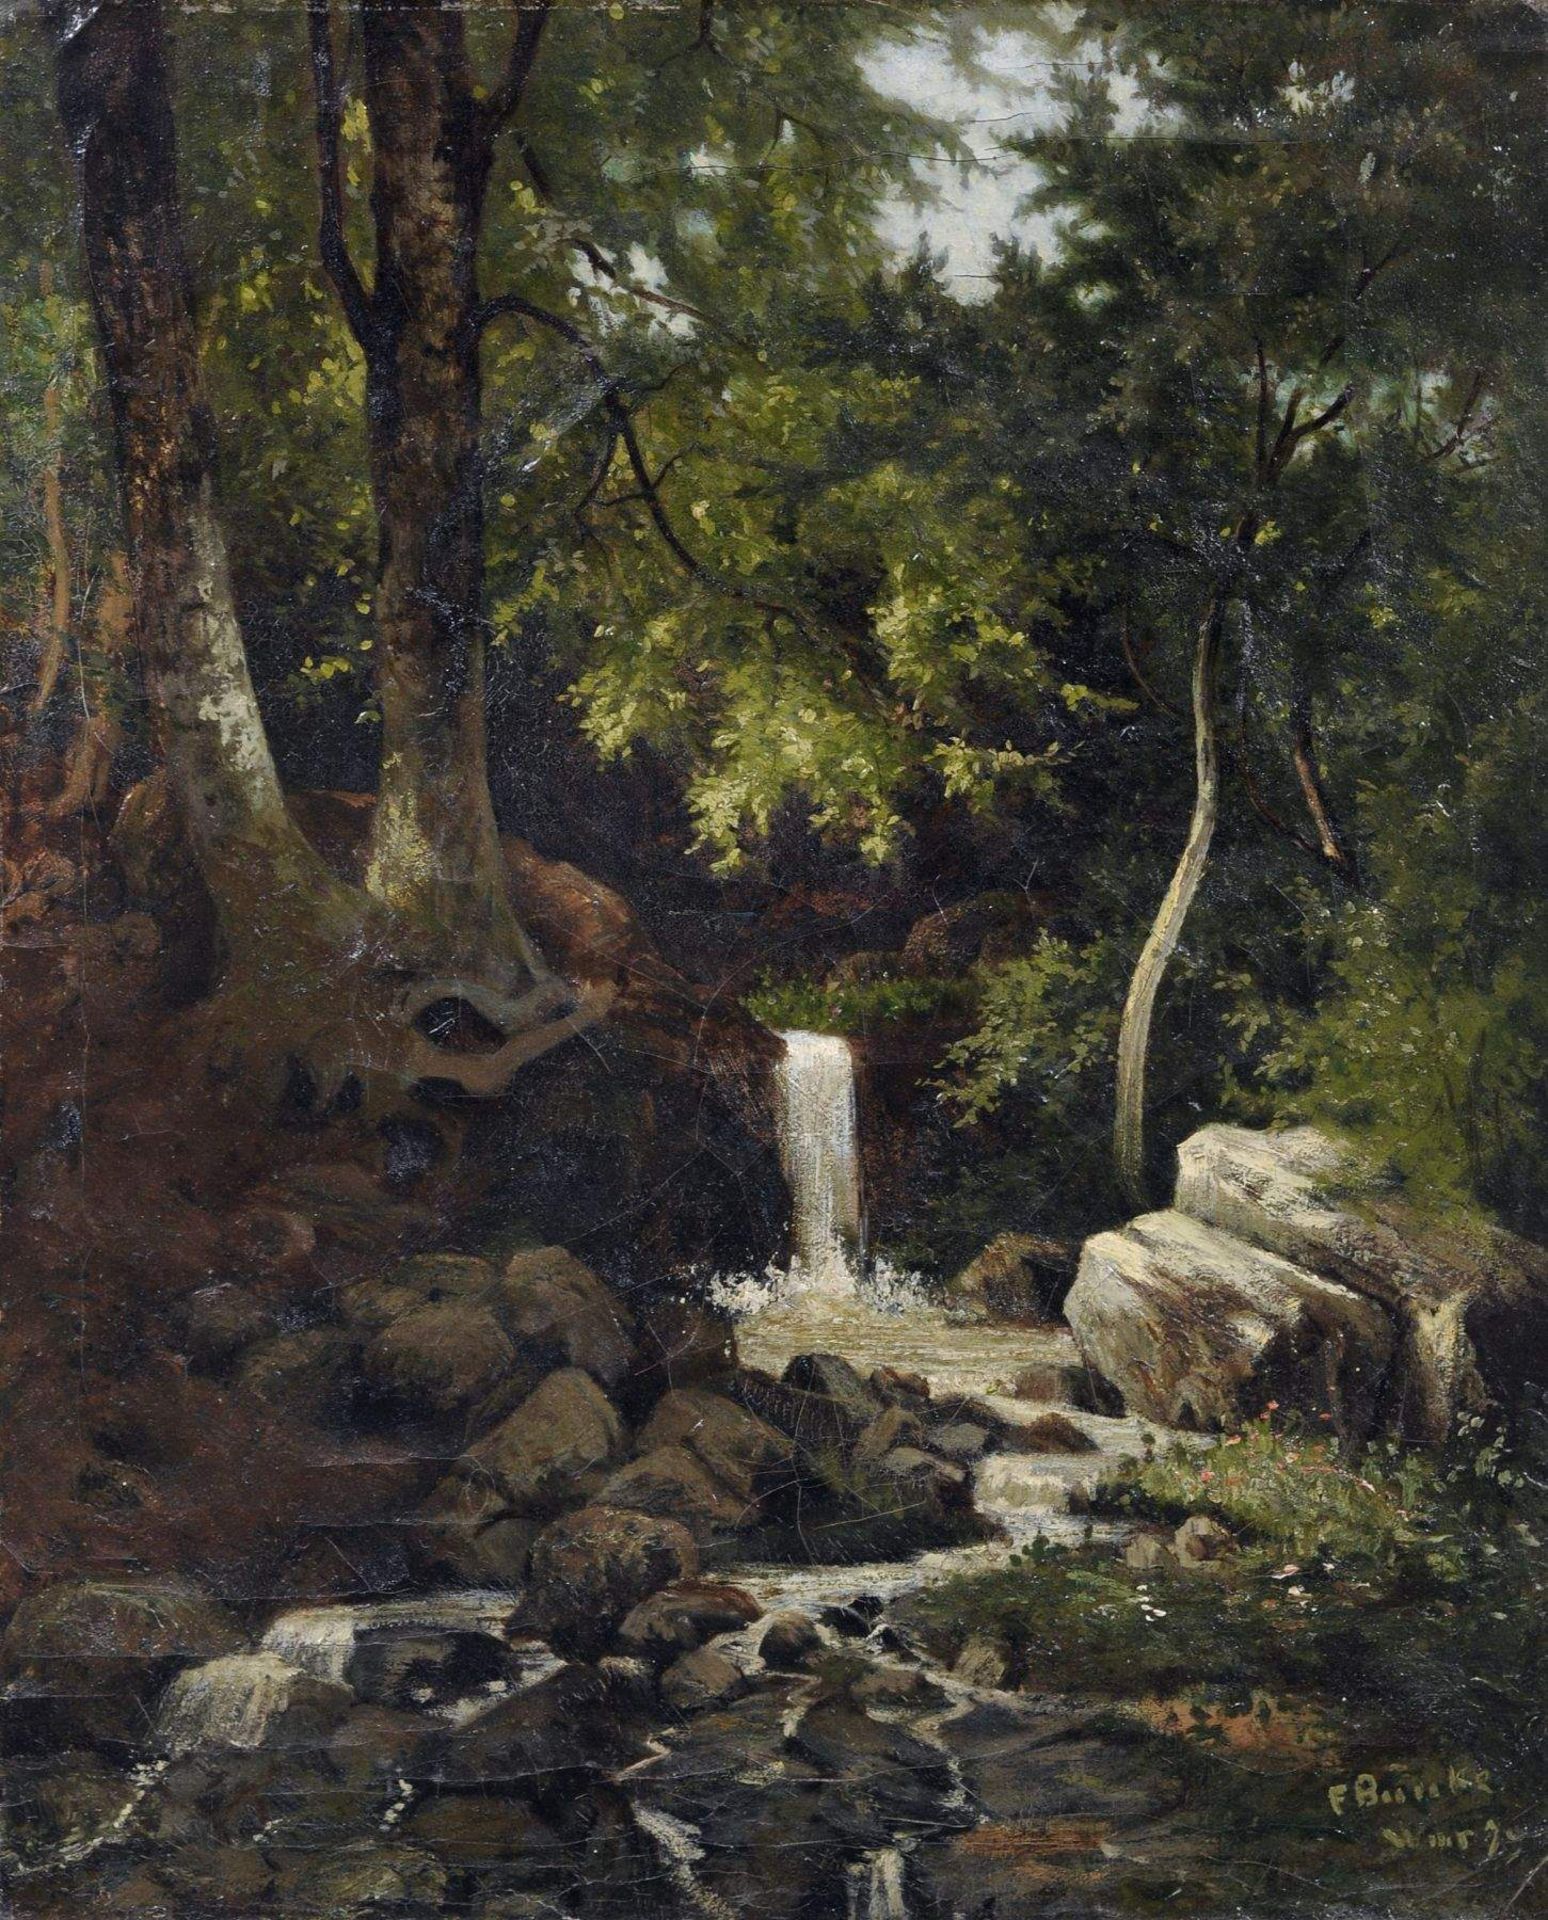 Franz Bunke, Waldstück mit Quelle. 1879.Öl auf Leinwand. Signiert "F. Bunke", ortsbezeichnet "W[ei]